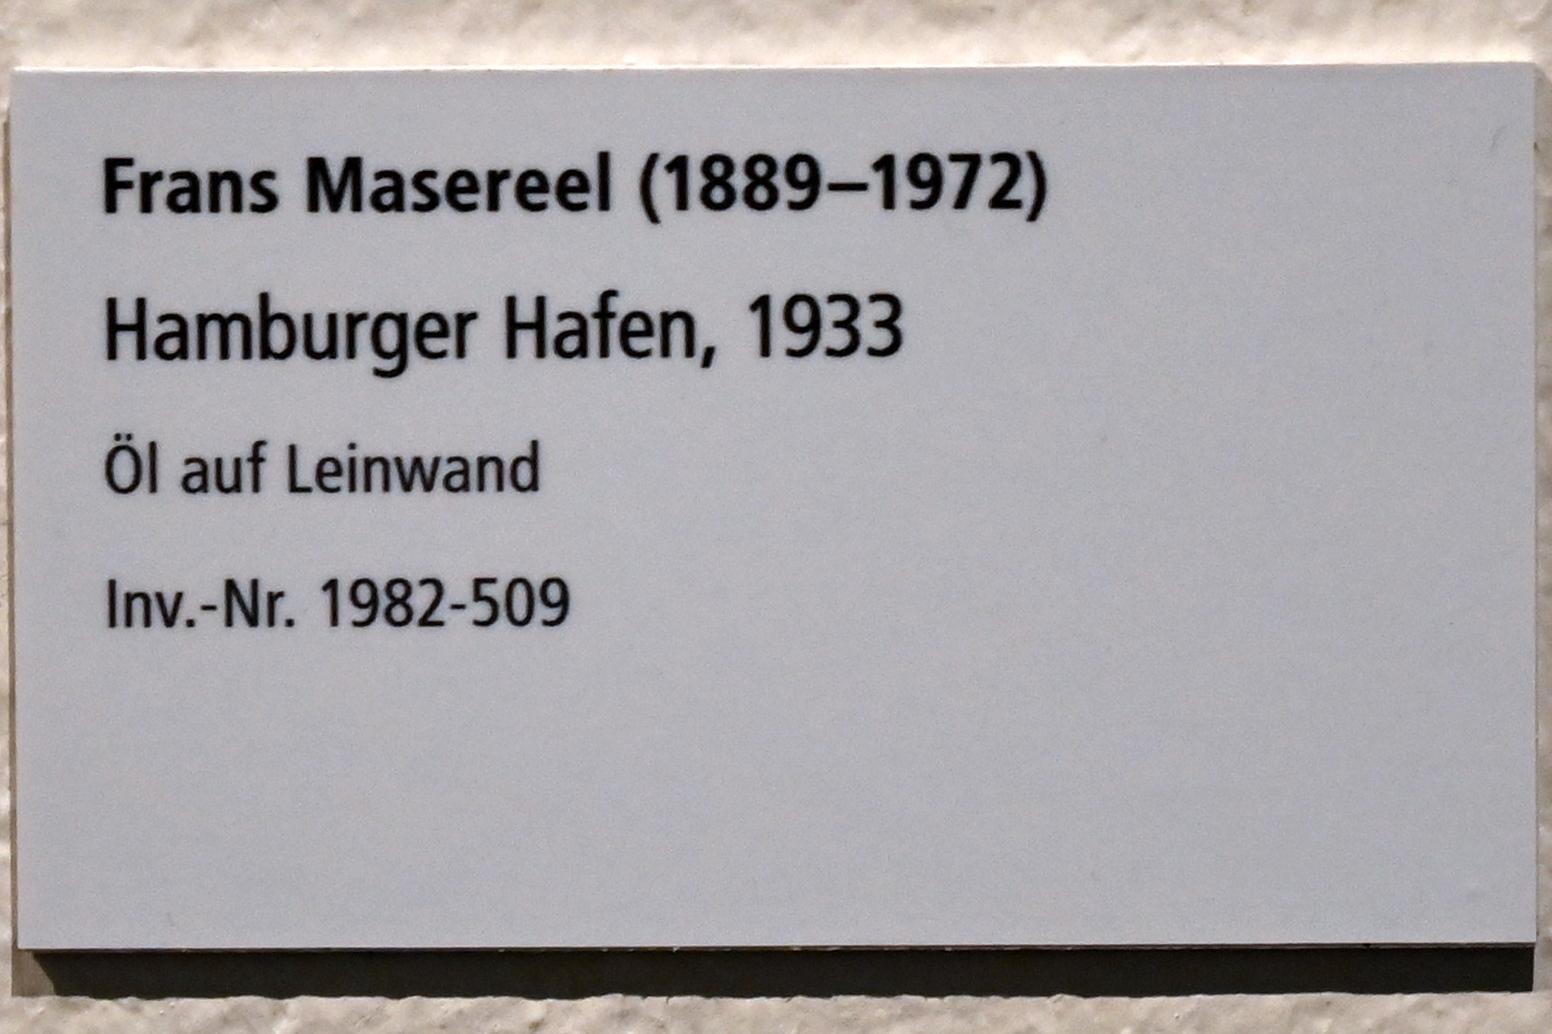 Frans Masereel (1933), Hamburger Hafen, Schleswig, Landesmuseum für Kunst und Kulturgeschichte, Galerie der Klassischen Moderne, 1933, Bild 2/2